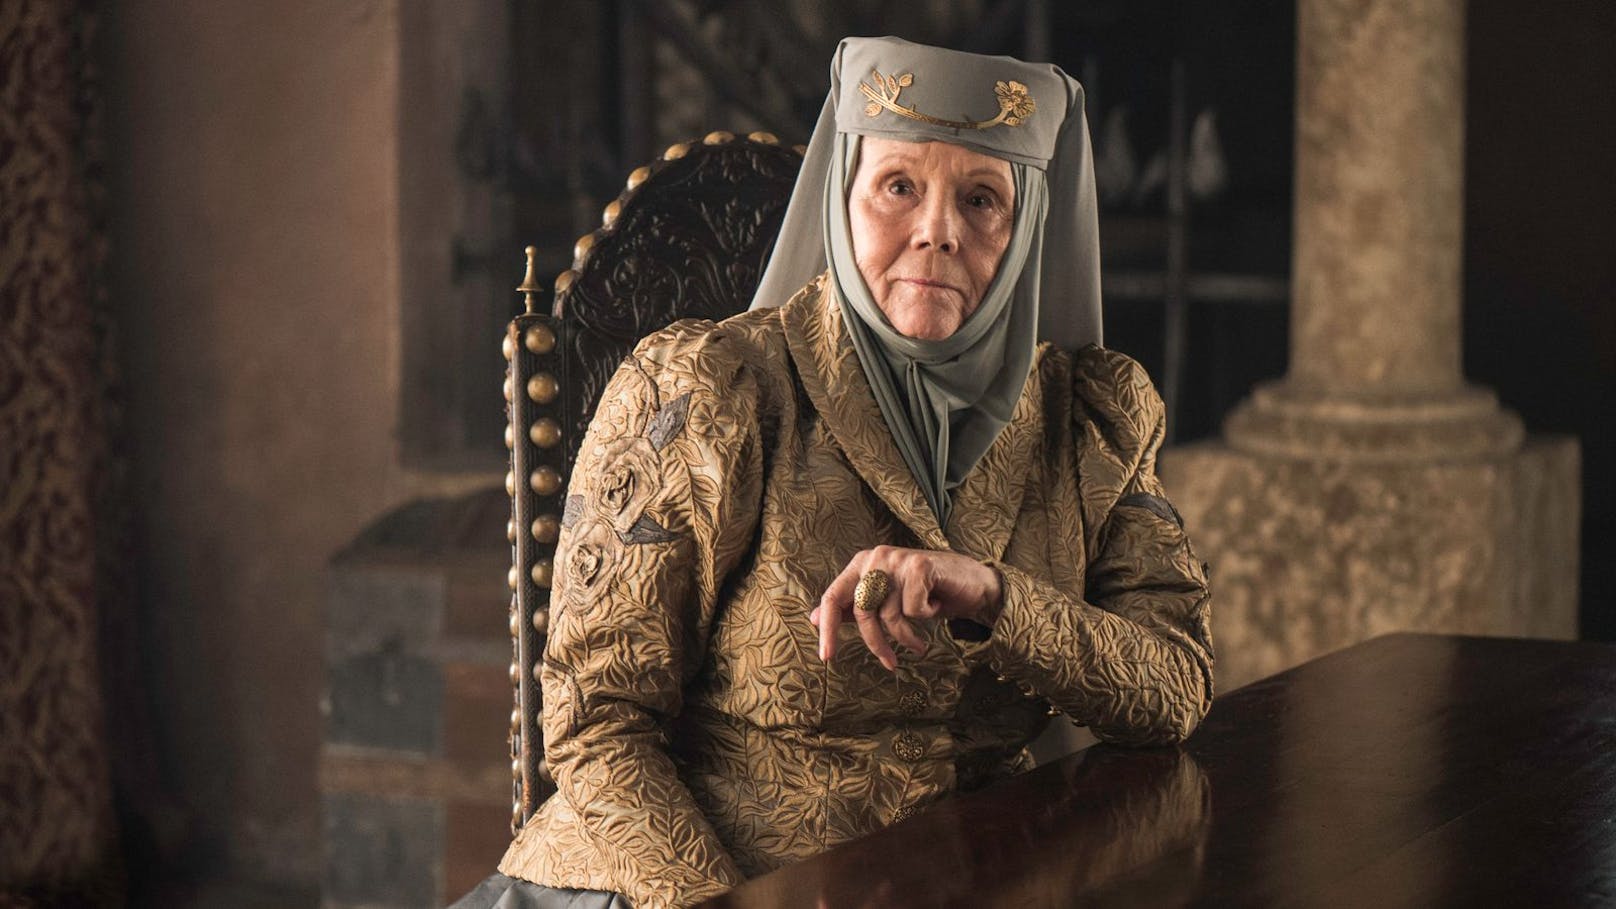 Diana Rigg, bekannt als Olenna Tyrell aus "Game of Thrones", ist tot.